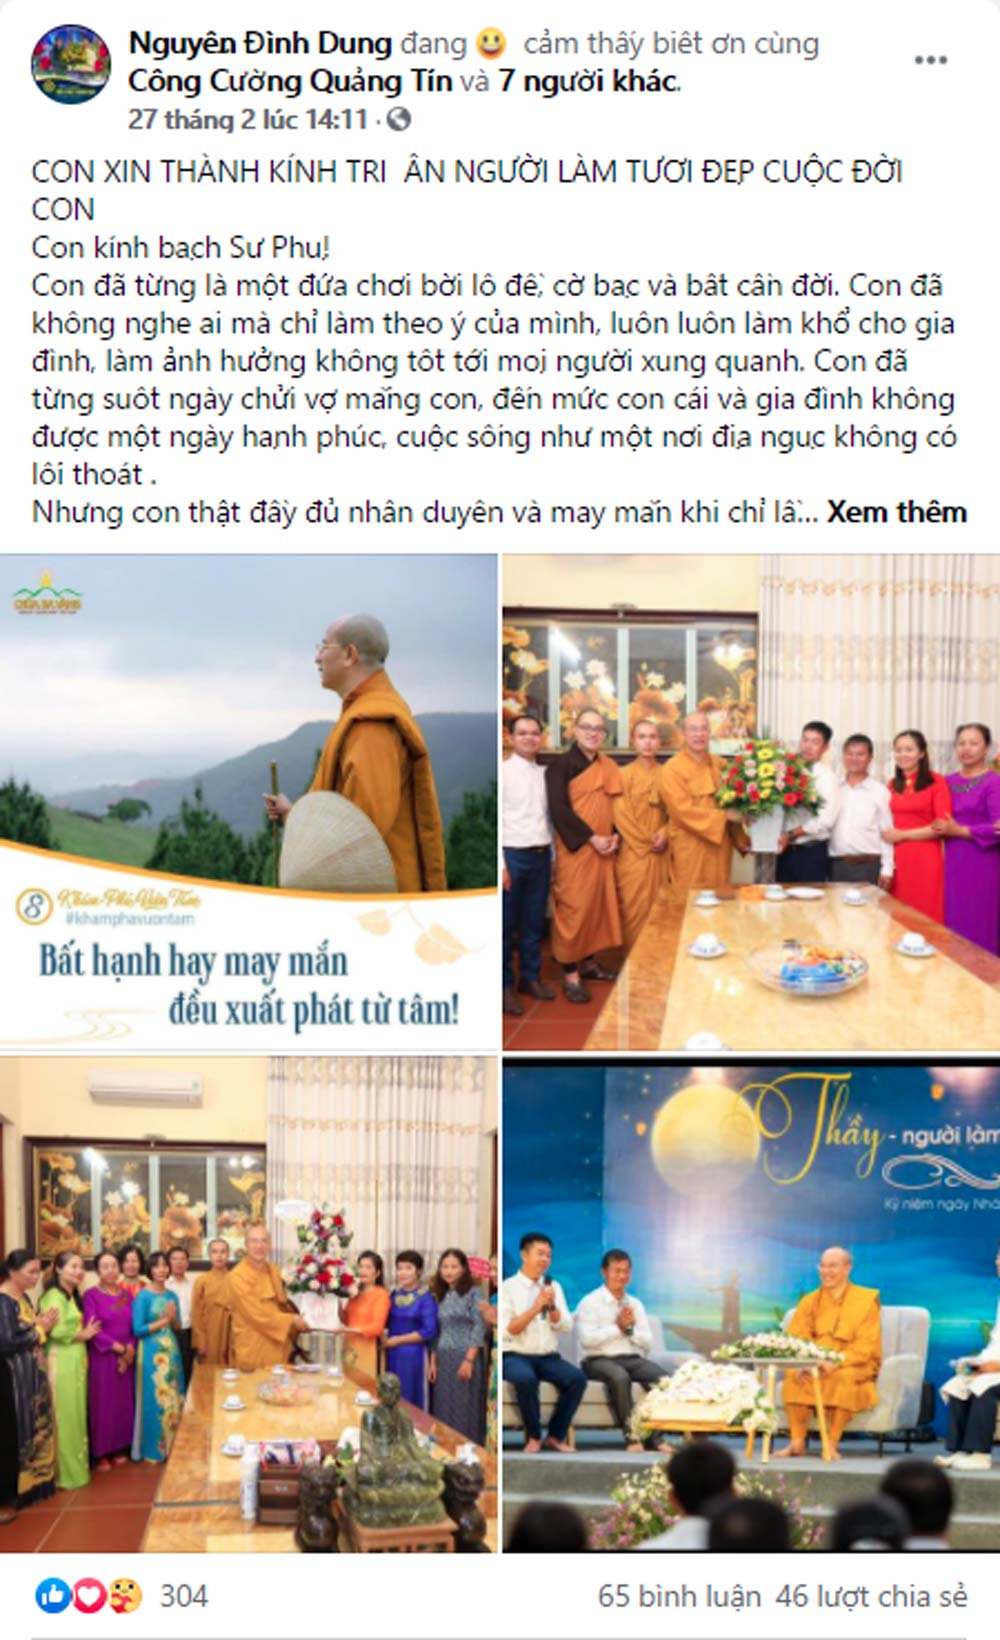 Nhân dịp sắp tới sinh nhật Sư Phụ 03/03, Phật tử Nguyễn Đình Dung đã viết lên những dòng tri ân sâu sắc kính dâng Sư Phụ và đăng tải trên trang Facebook cá nhân